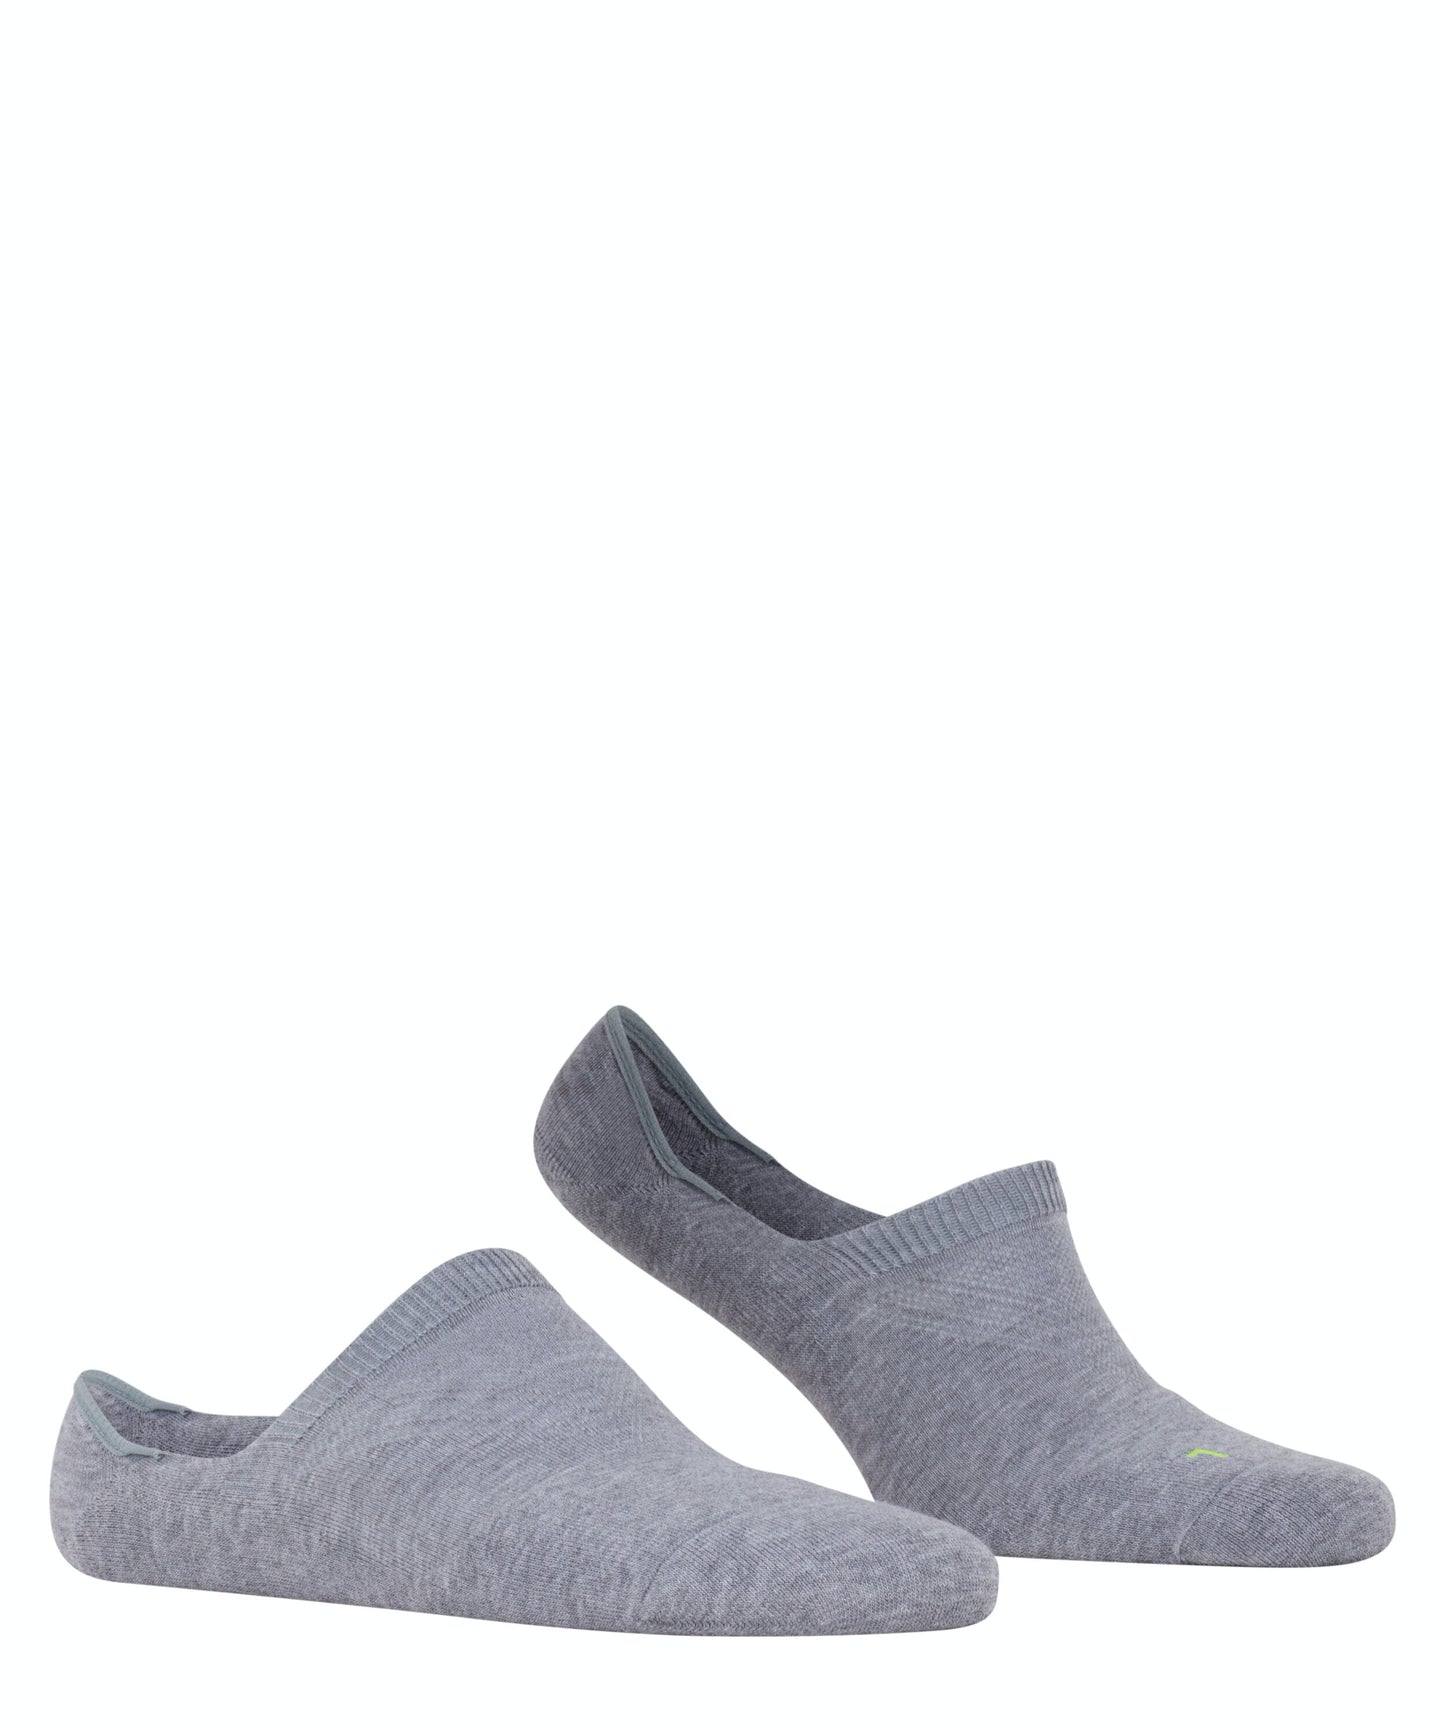 FALKE COOL KICK Invisible Socks in Light Grey